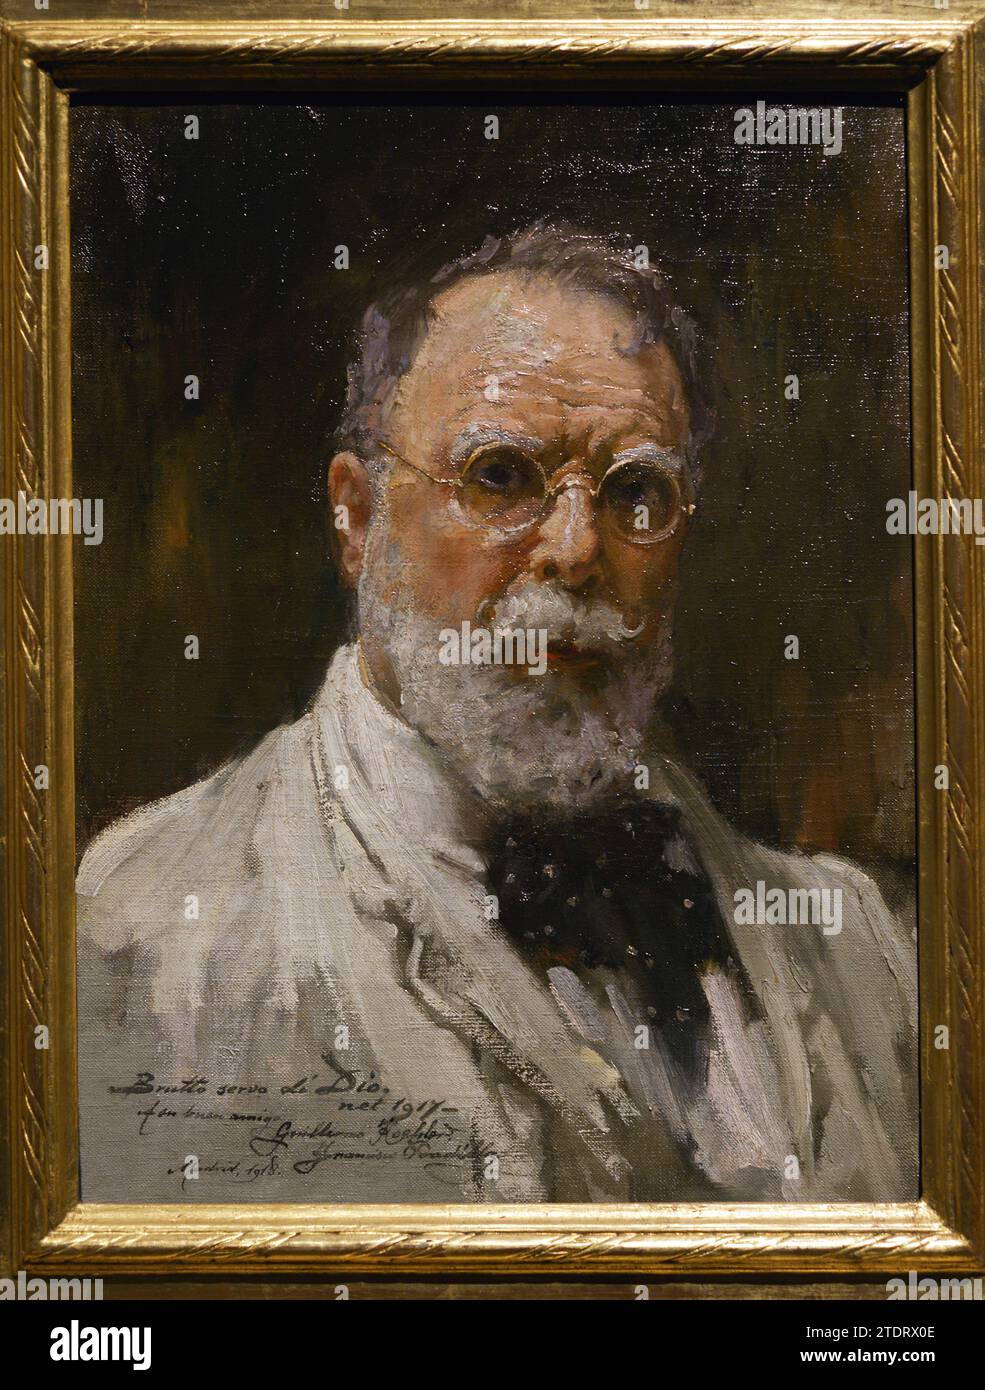 Francisco Pradilla Ortiz (1848-1921). Pittore spagnolo. Autoritratto, 1917. Olio su tela, 46,8 x 35,5 cm. Museo del Prado. Madrid. Spagna. Foto Stock